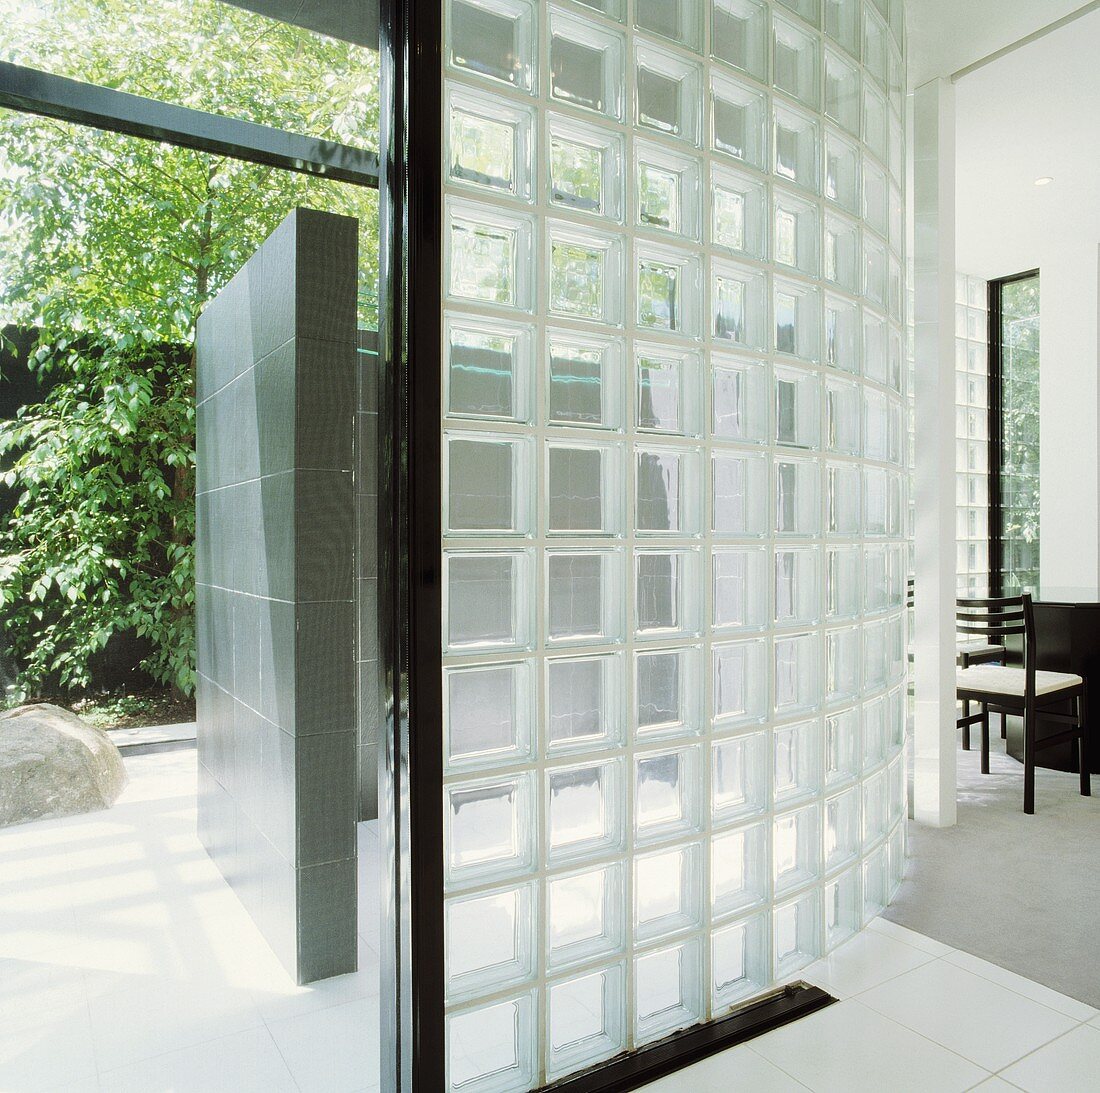 Gebogene Wand aus Glasbausteinen in modernem Haus mit offener Tür und Blick in Garten